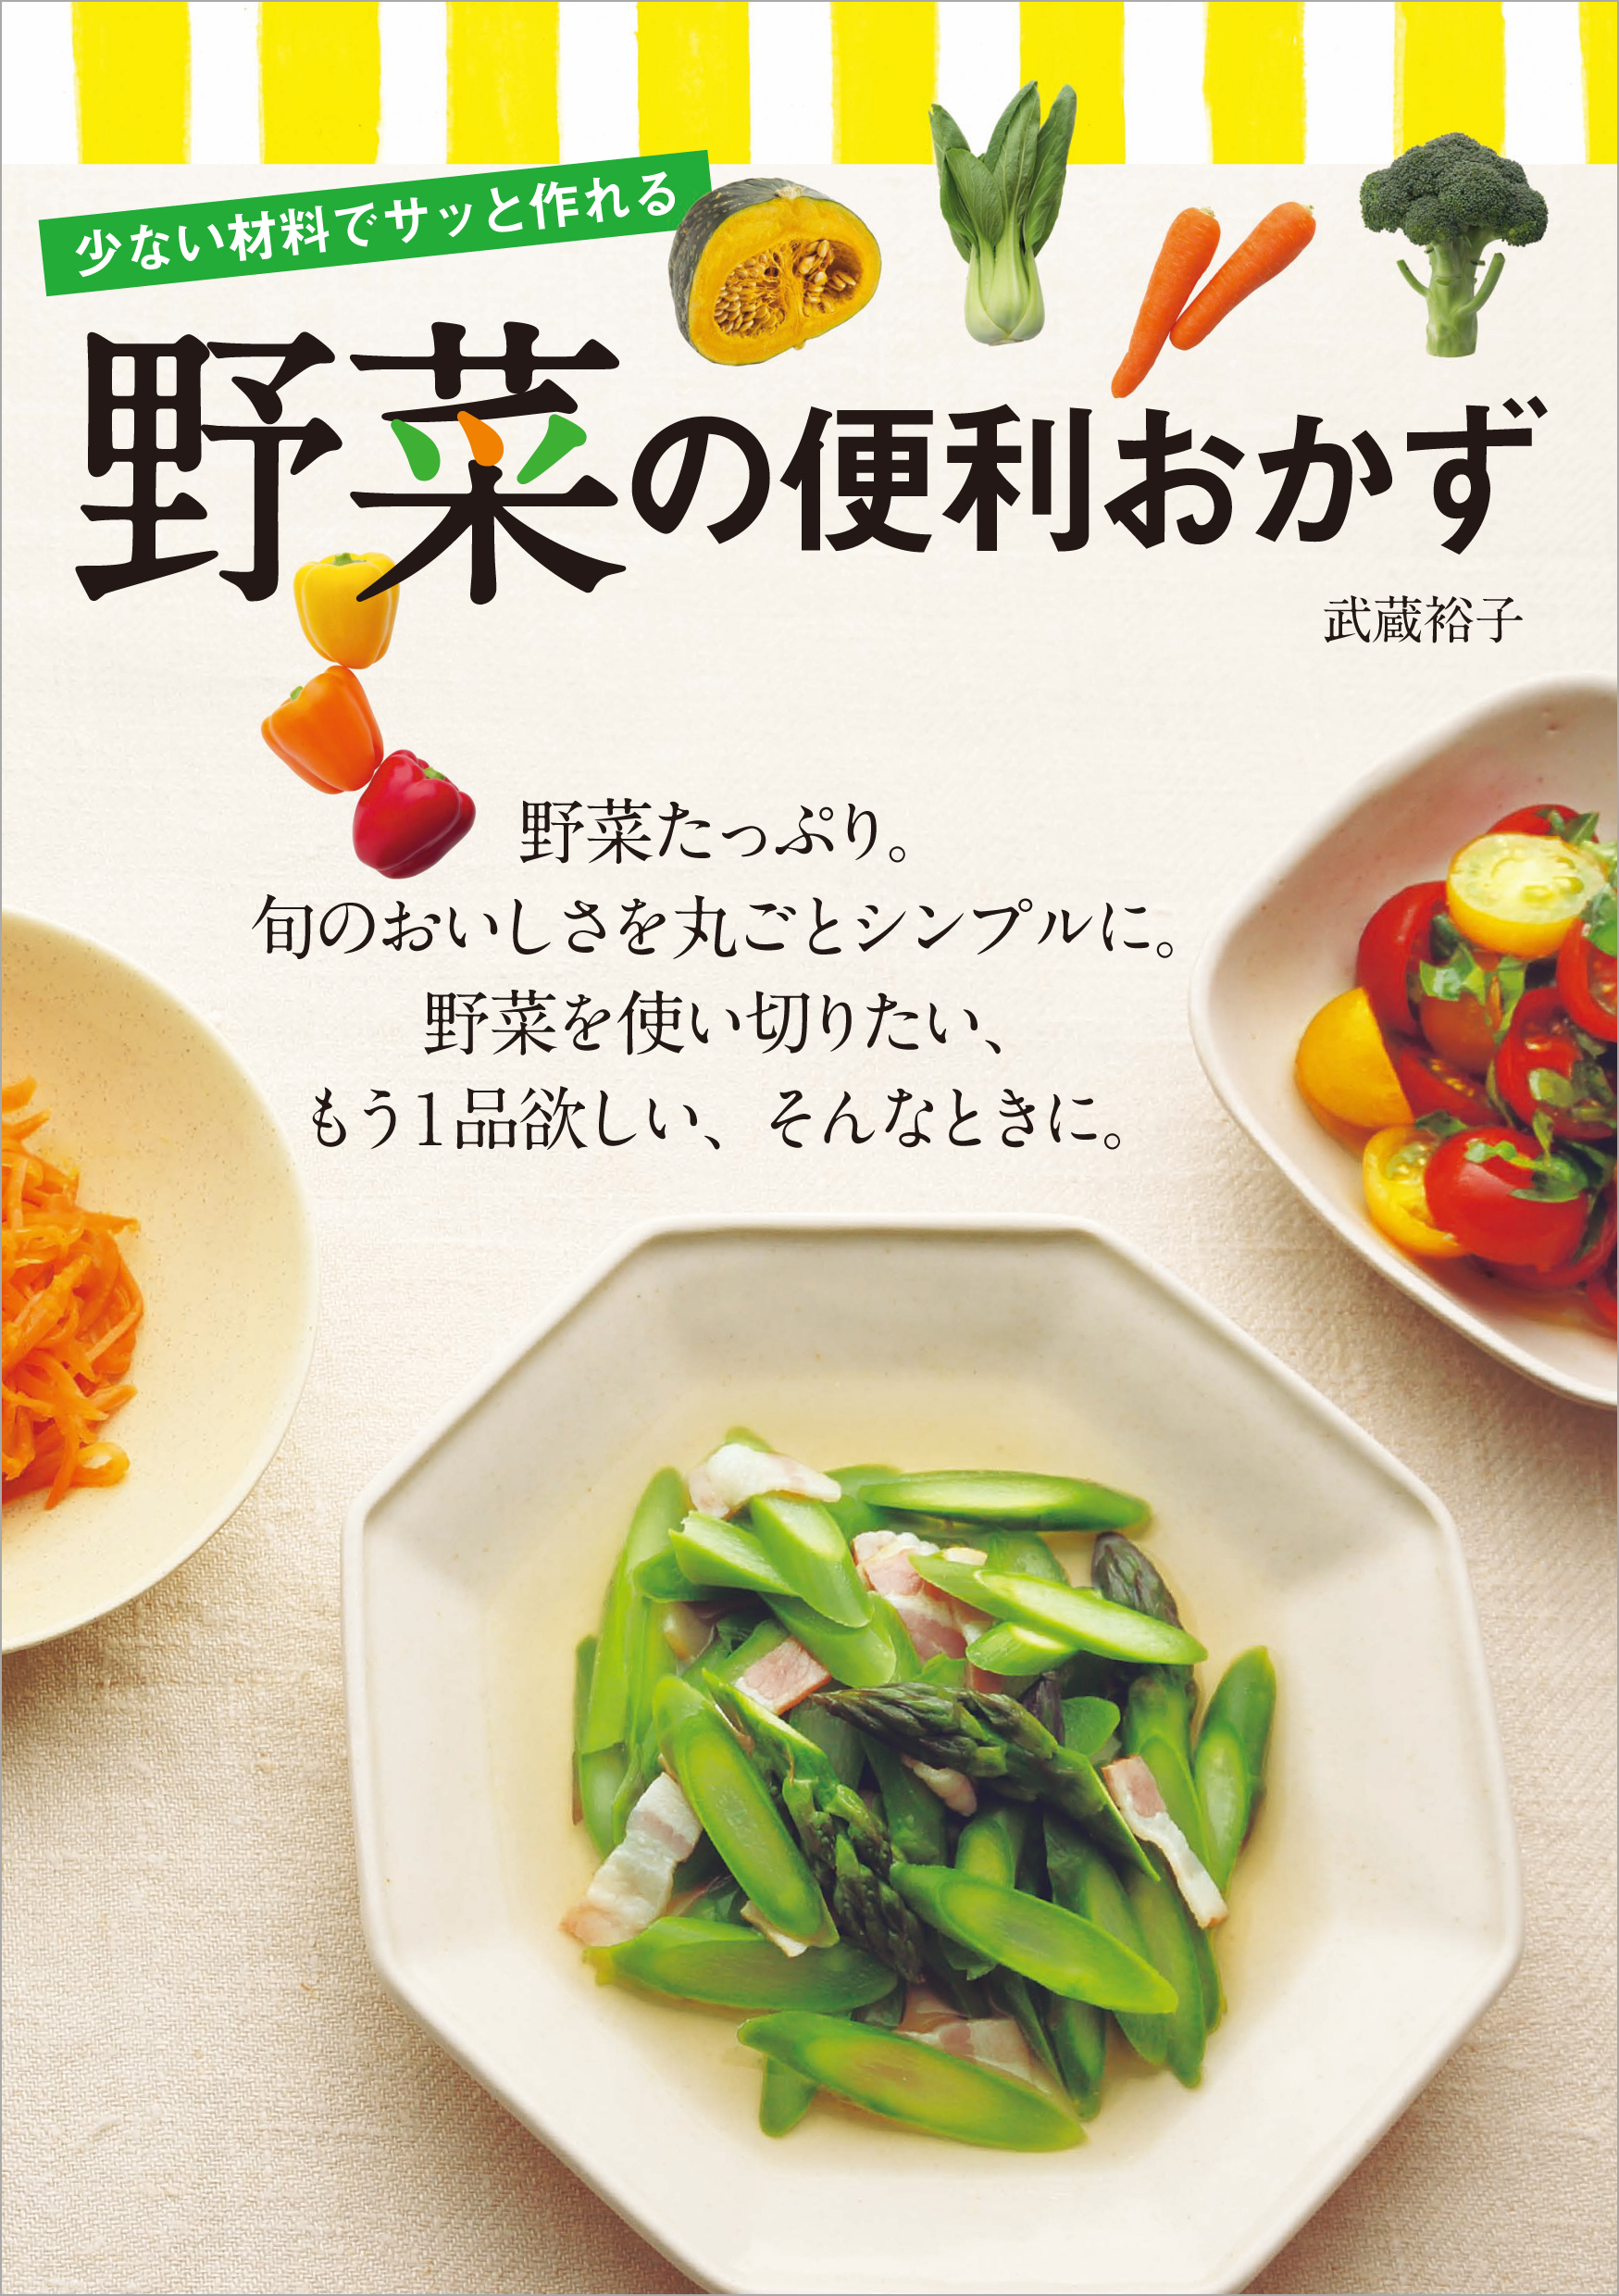 少ない材料でサッと作れる 野菜の便利おかず 1巻(書籍) - 電子書籍 | U